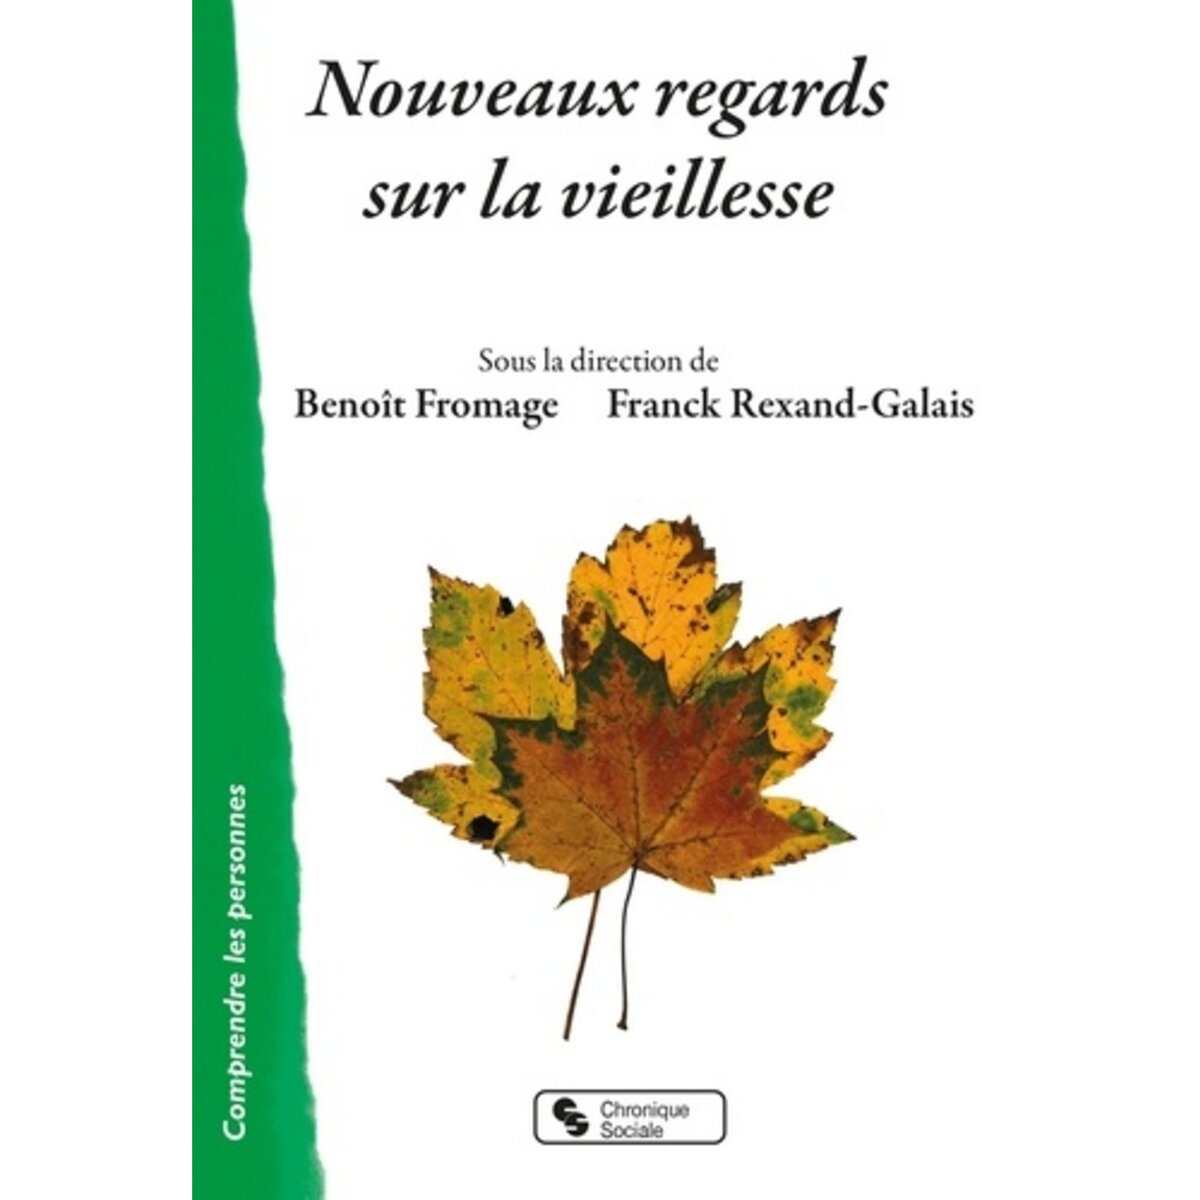  NOUVEAUX REGARDS SUR LA VIEILLESSE, Fromage Benoît